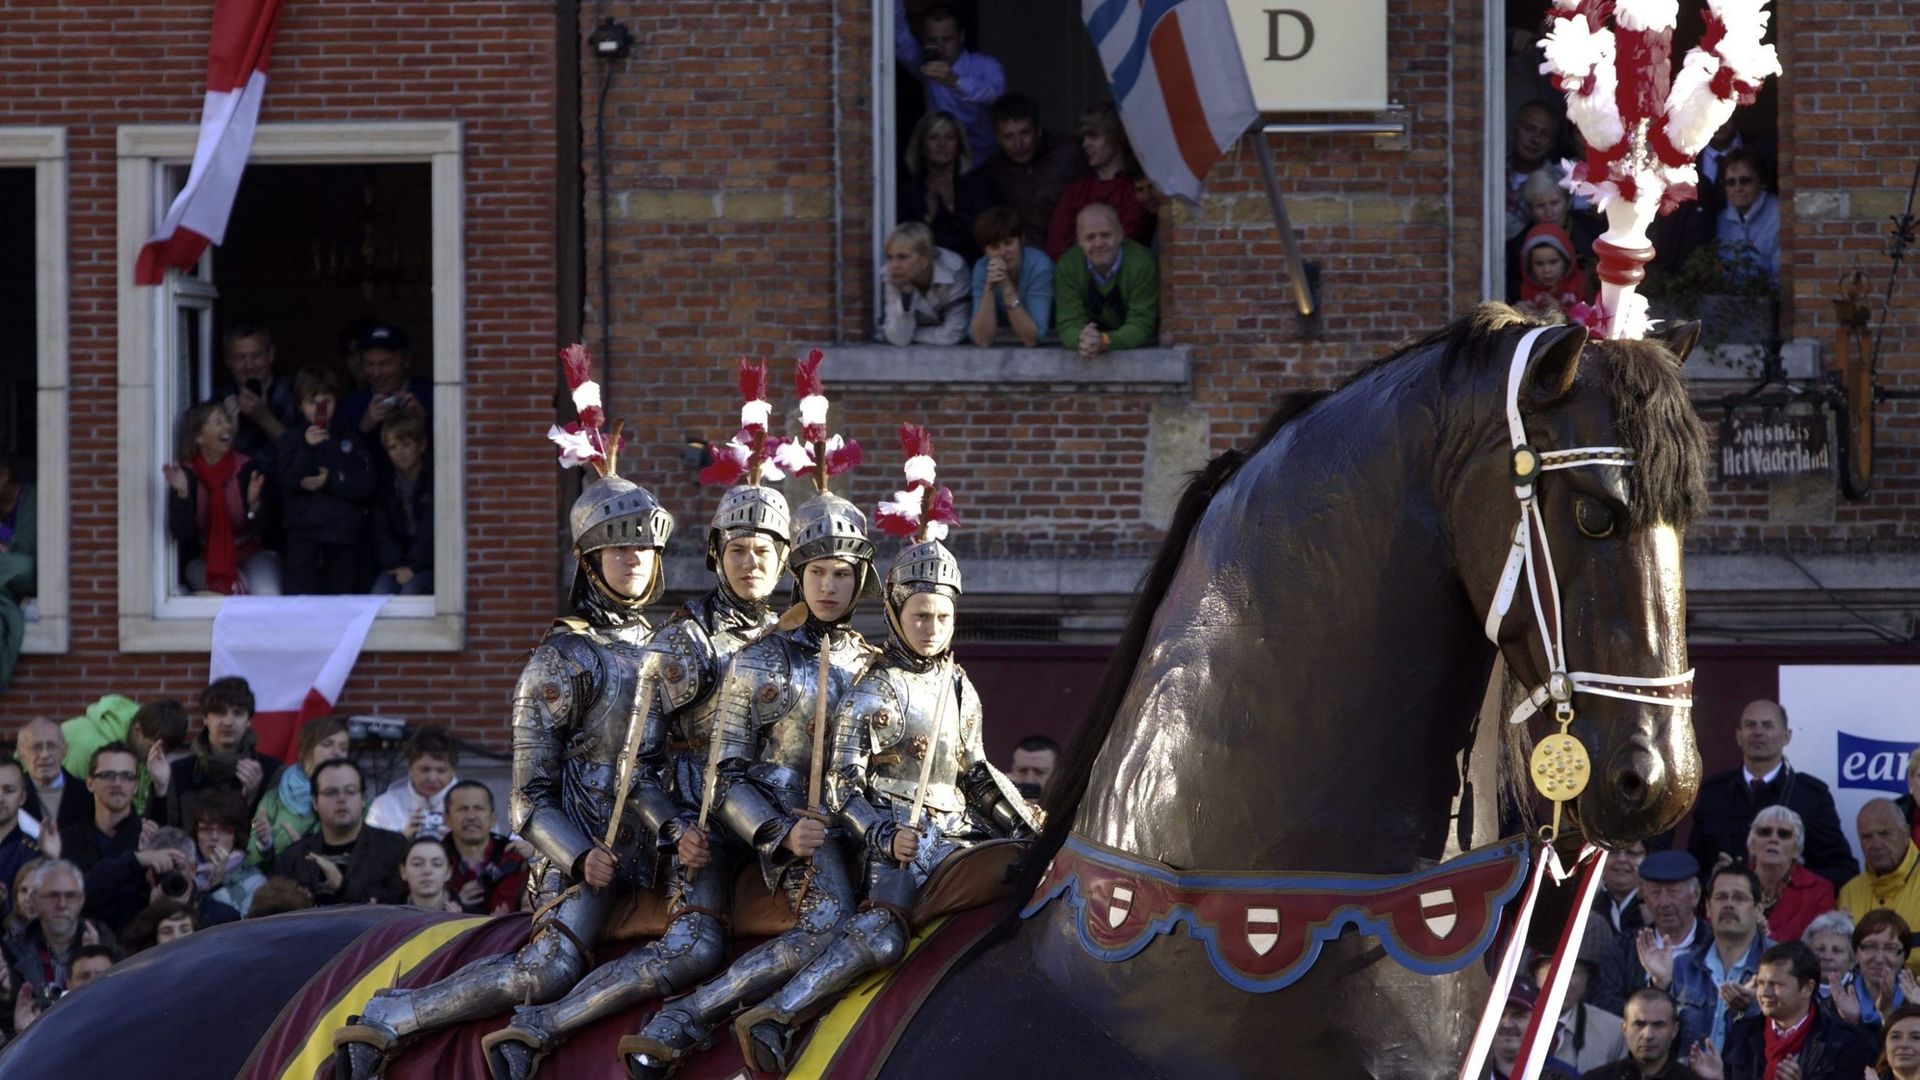 La photo d’illustration montre les quatre frères sur le cheval lors du 'Ros Beiaardommegang', une procession décennale mettant en scène le cheval héroïque Ros Beiaard, dimanche 30 mai 2010, à Dendermonde.